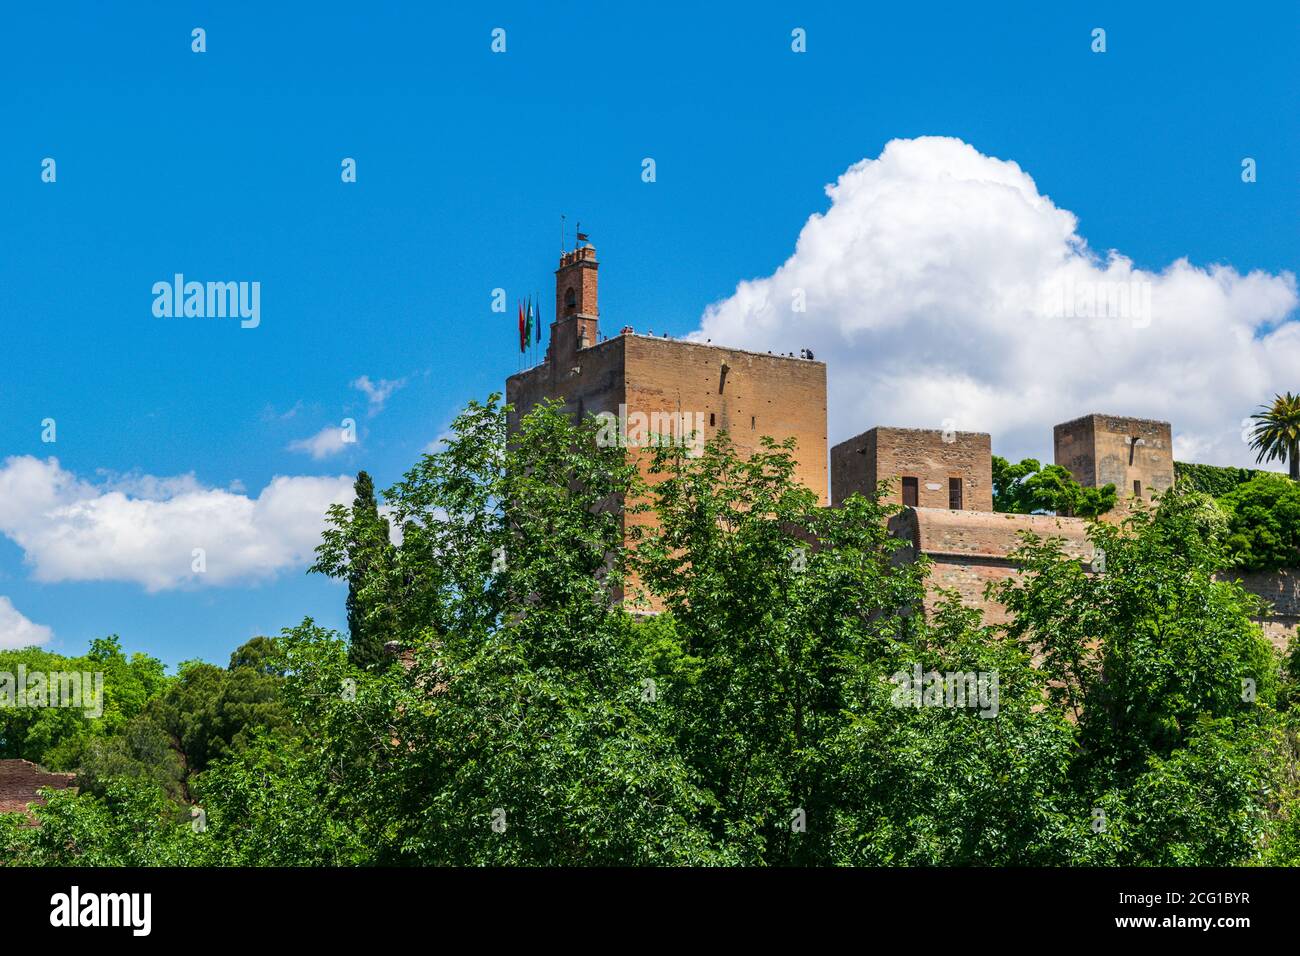 Glockenturm und spanische Flaggen auf der Spitze des Wachturms, Alhambra Palast - Granada, Spanien Stockfoto